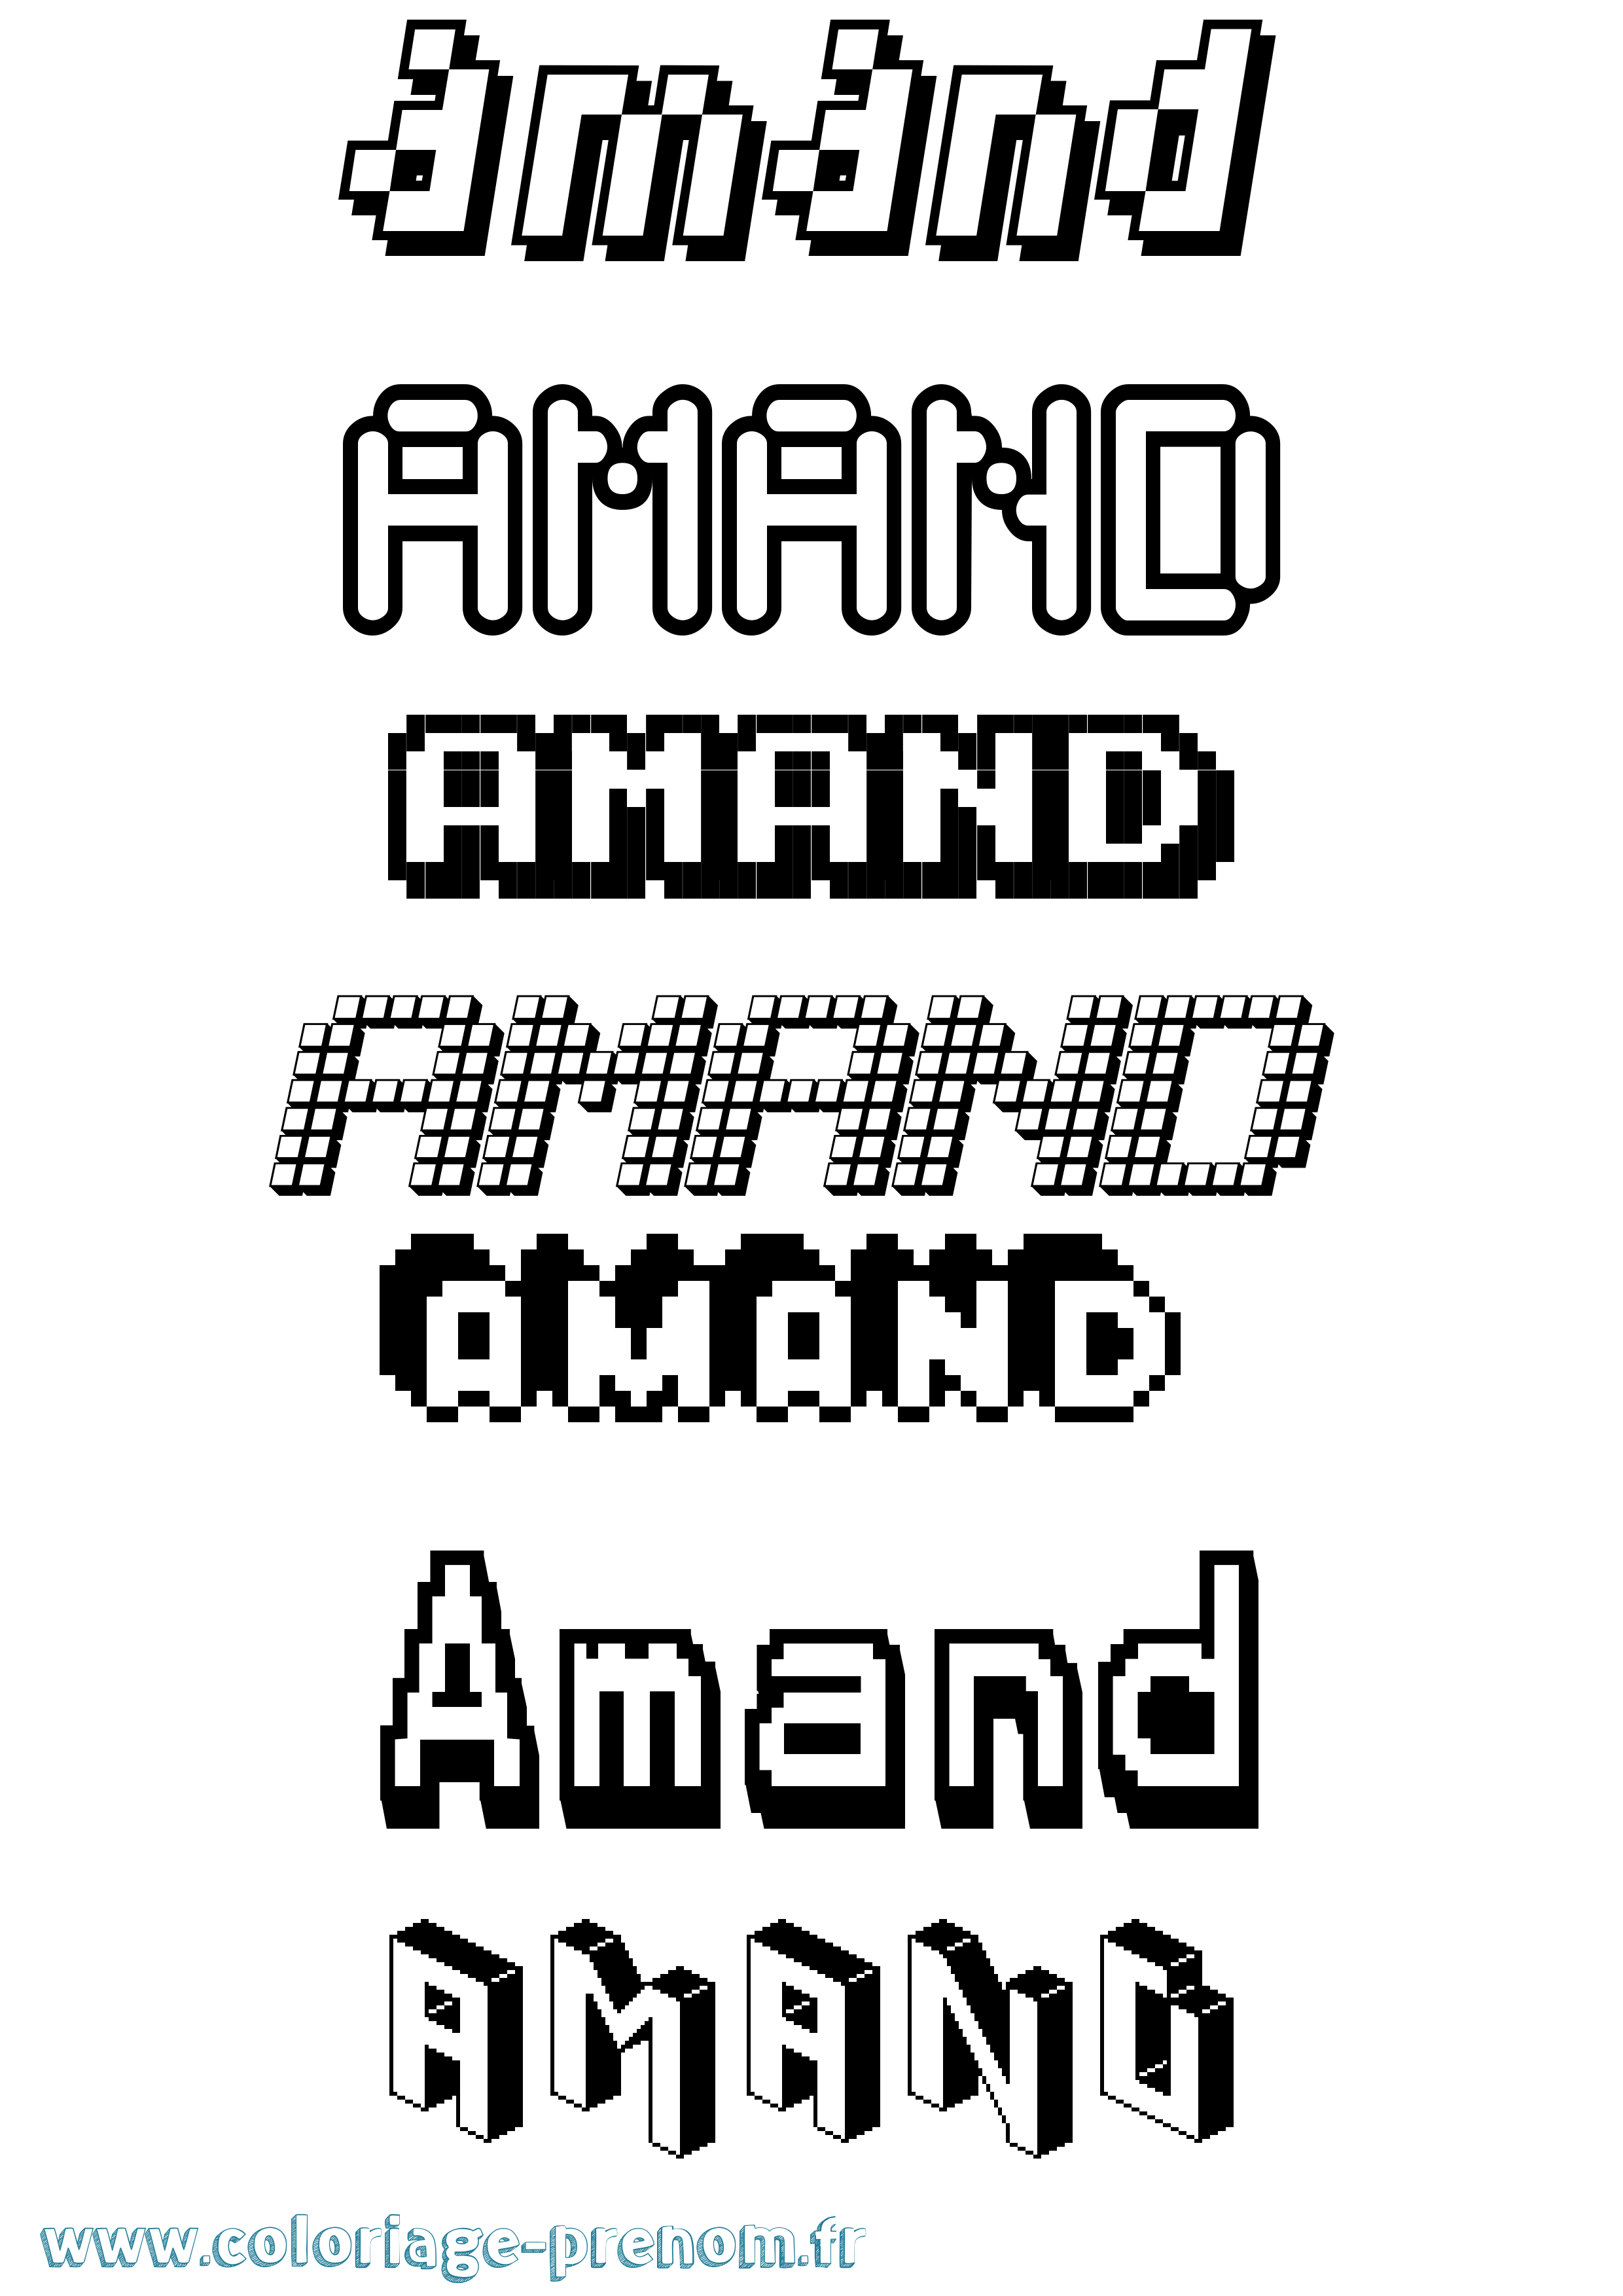 Coloriage prénom Amand Pixel